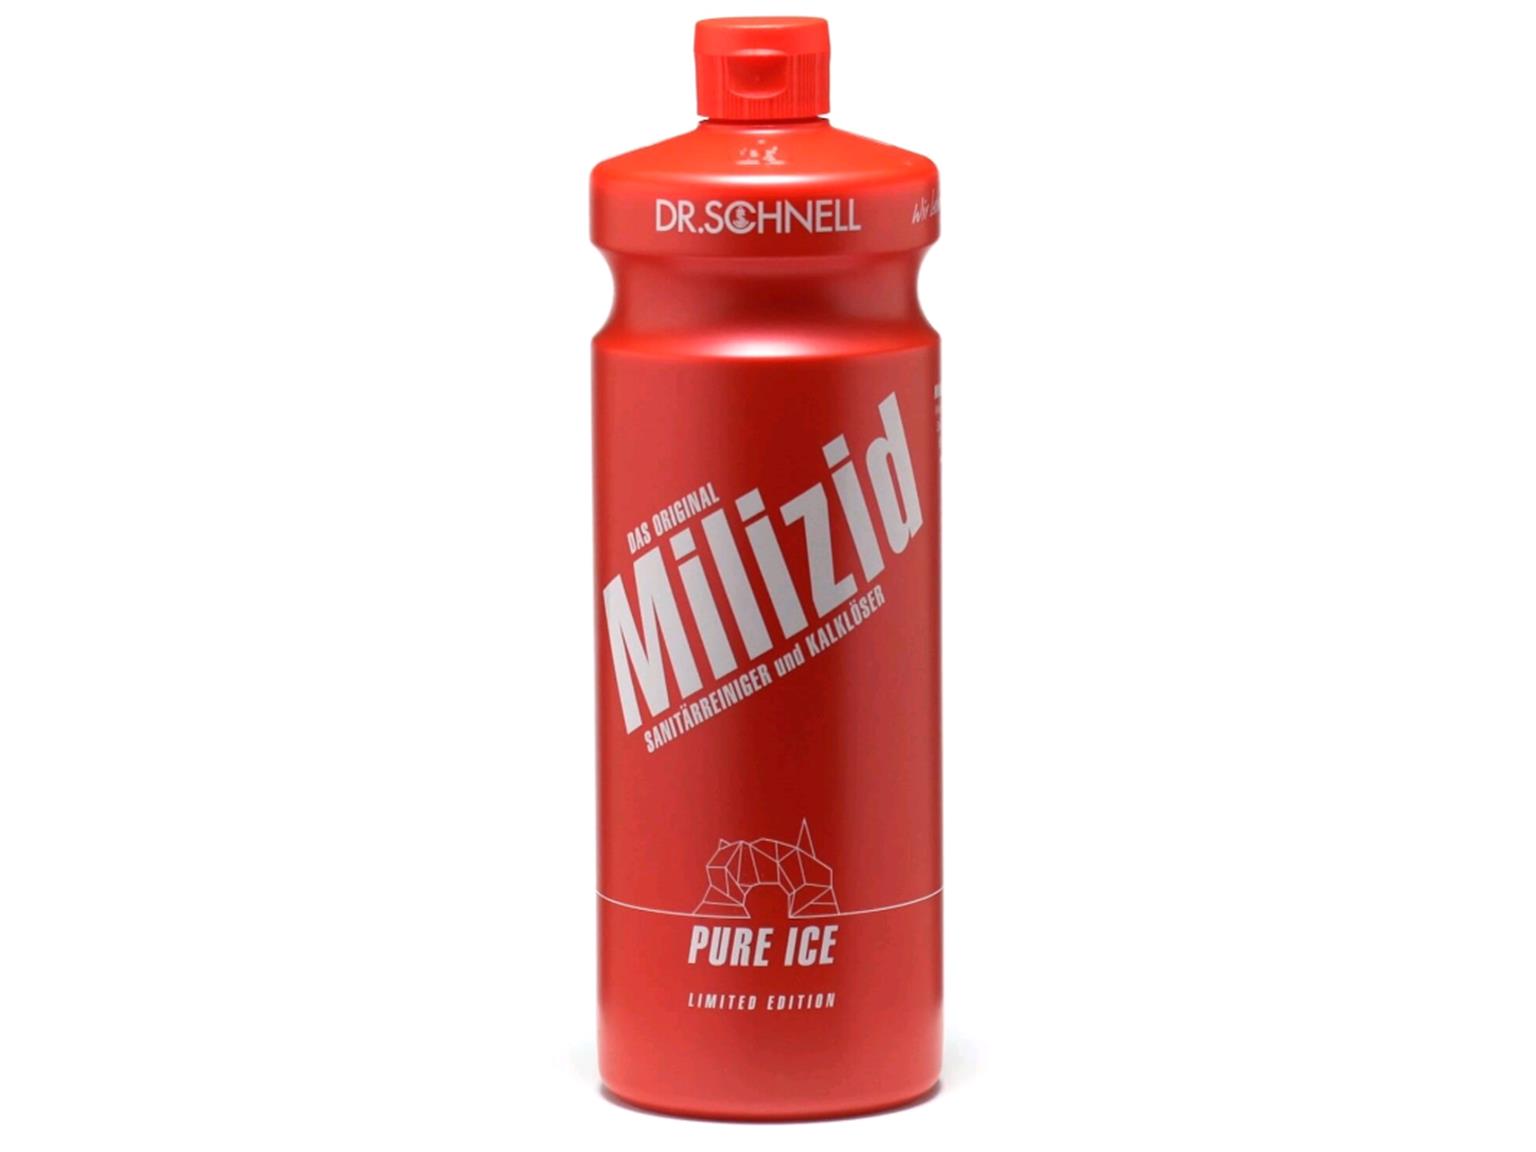 REINIGUNGSMITTEL DR.SCHNELL  Milizid Pure Ice, 1 Liter Flasche